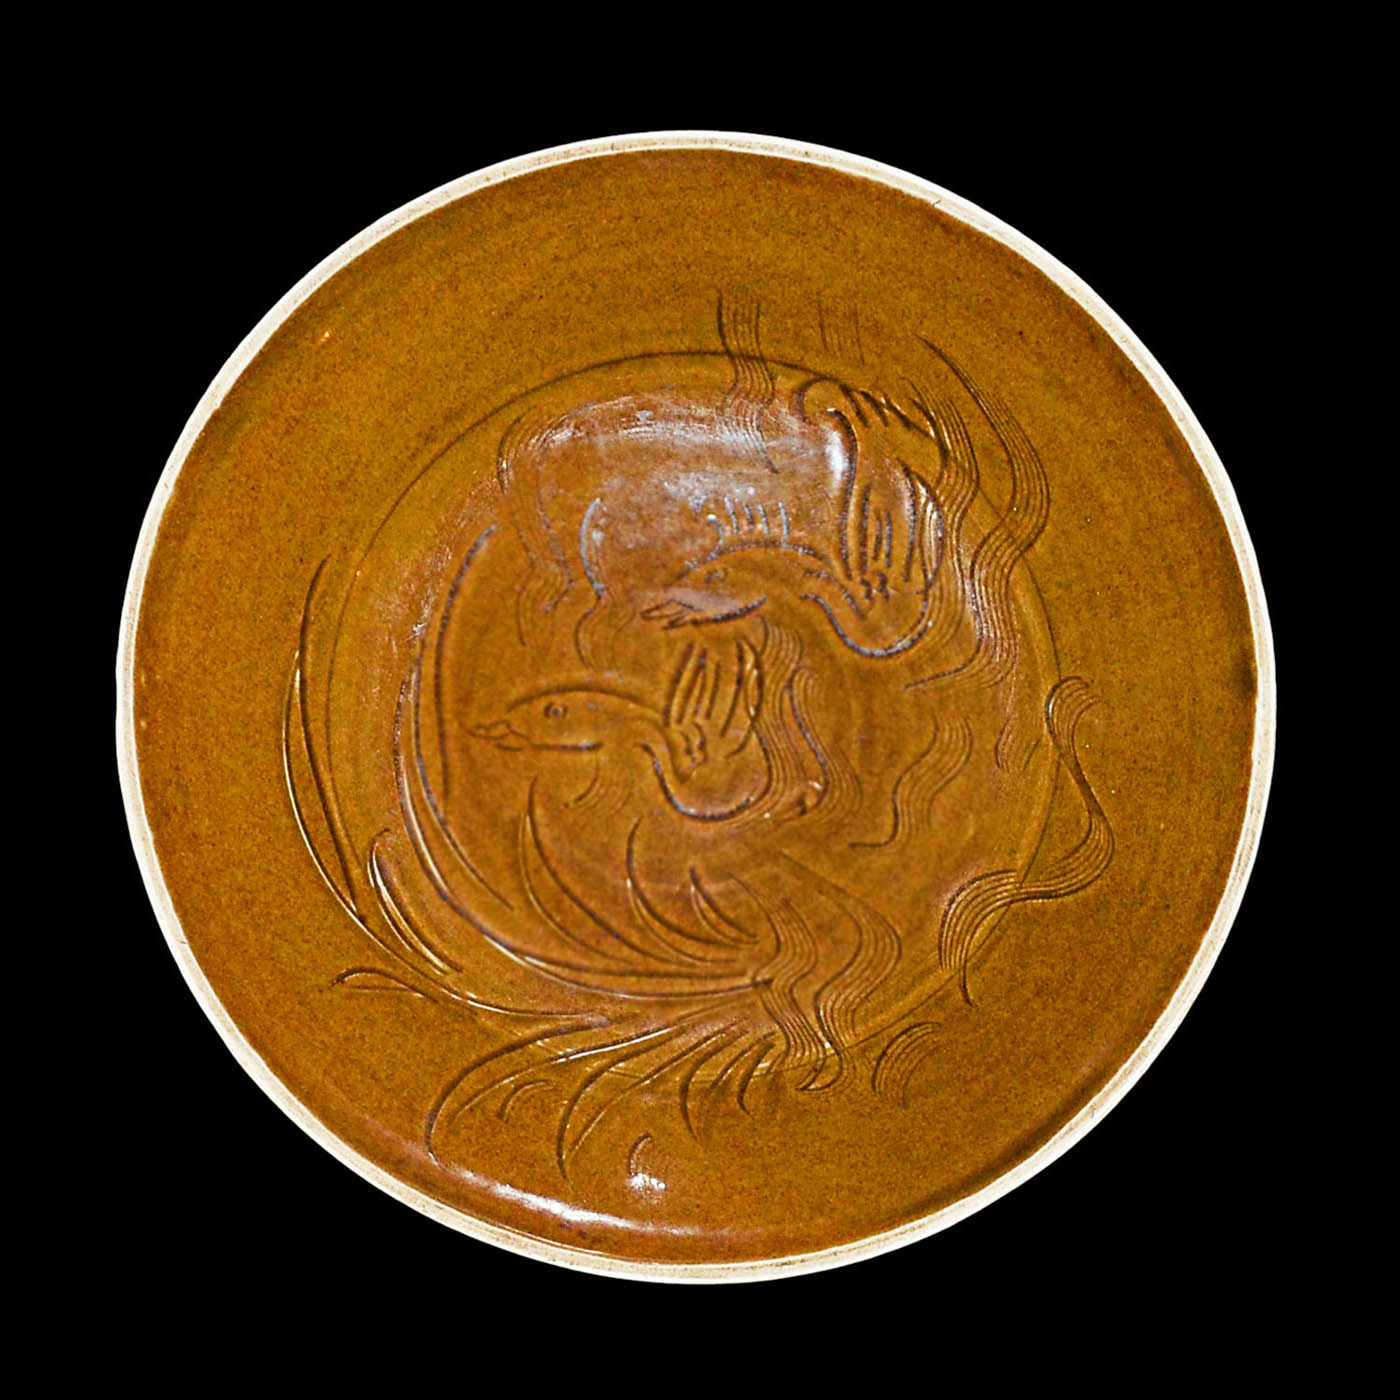 定窯醬釉刻水禽盤 (官)字款 Dingyao-Type Persimmon-Glazed Plate with Incised Aquatic Scene  Diameter: 7⅞ in (20